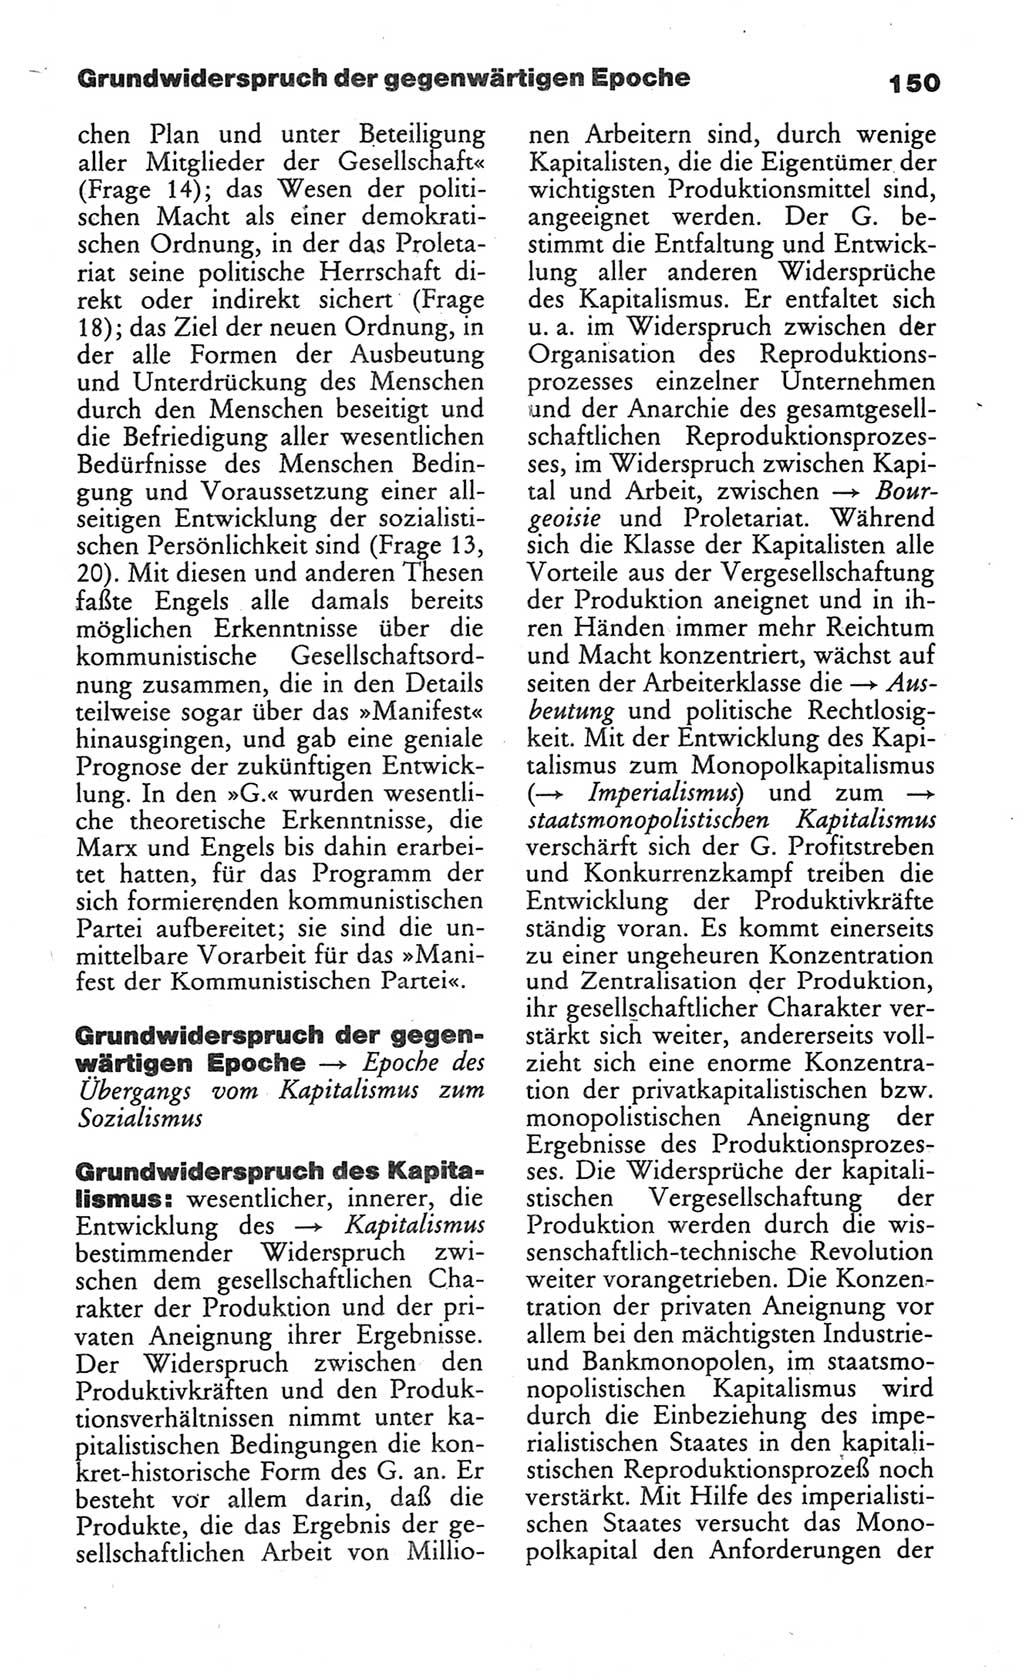 Wörterbuch des wissenschaftlichen Kommunismus [Deutsche Demokratische Republik (DDR)] 1984, Seite 150 (Wb. wiss. Komm. DDR 1984, S. 150)